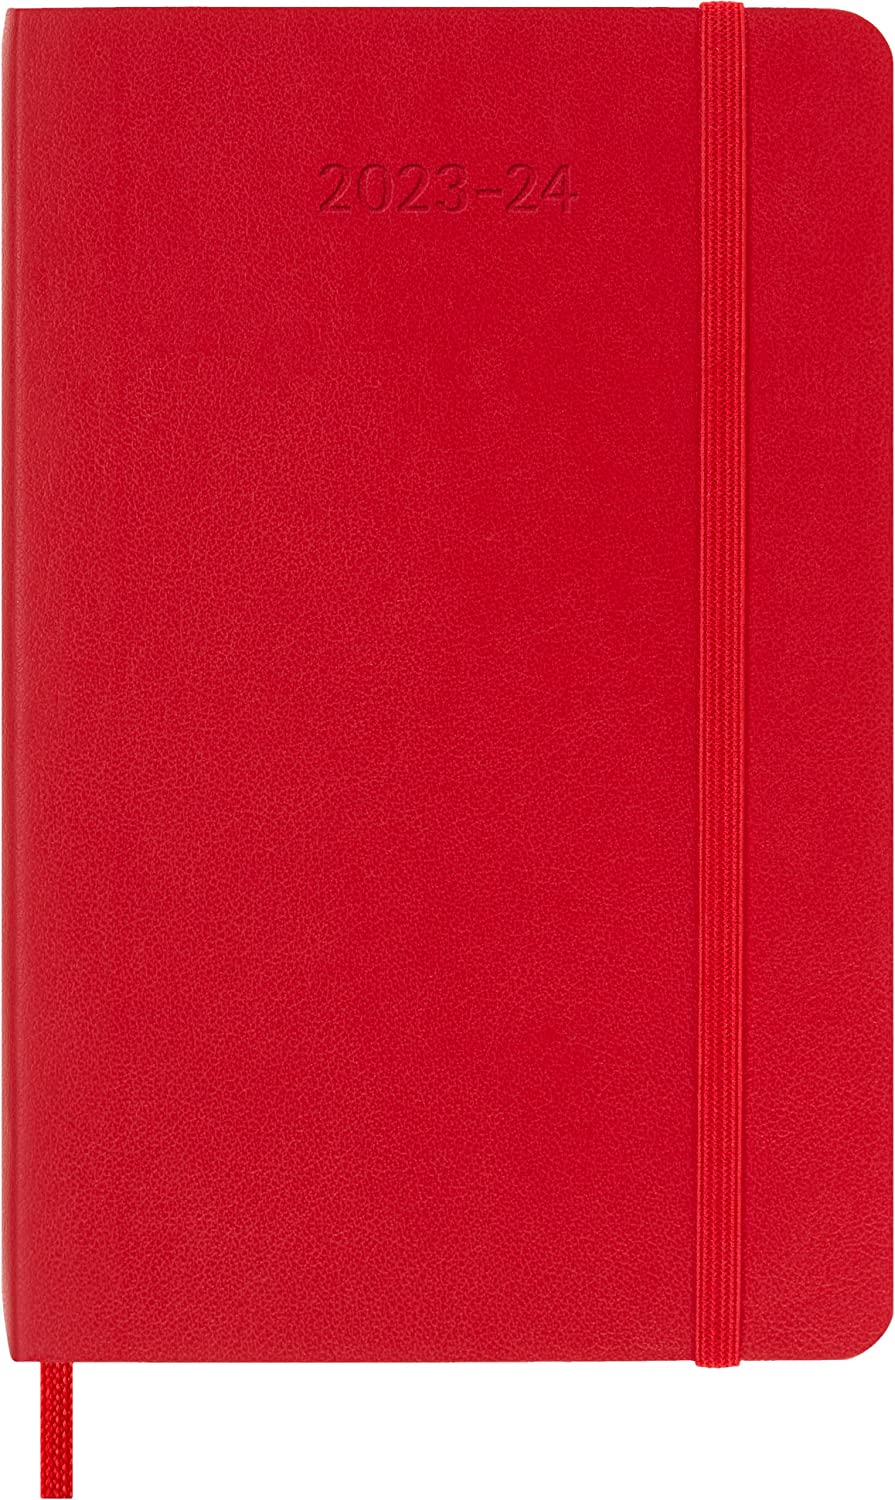 Agenda 2023-2024 - 18-Month Weekly Planner - Pocket, Soft Cover - Scarlet Red | Moleskine